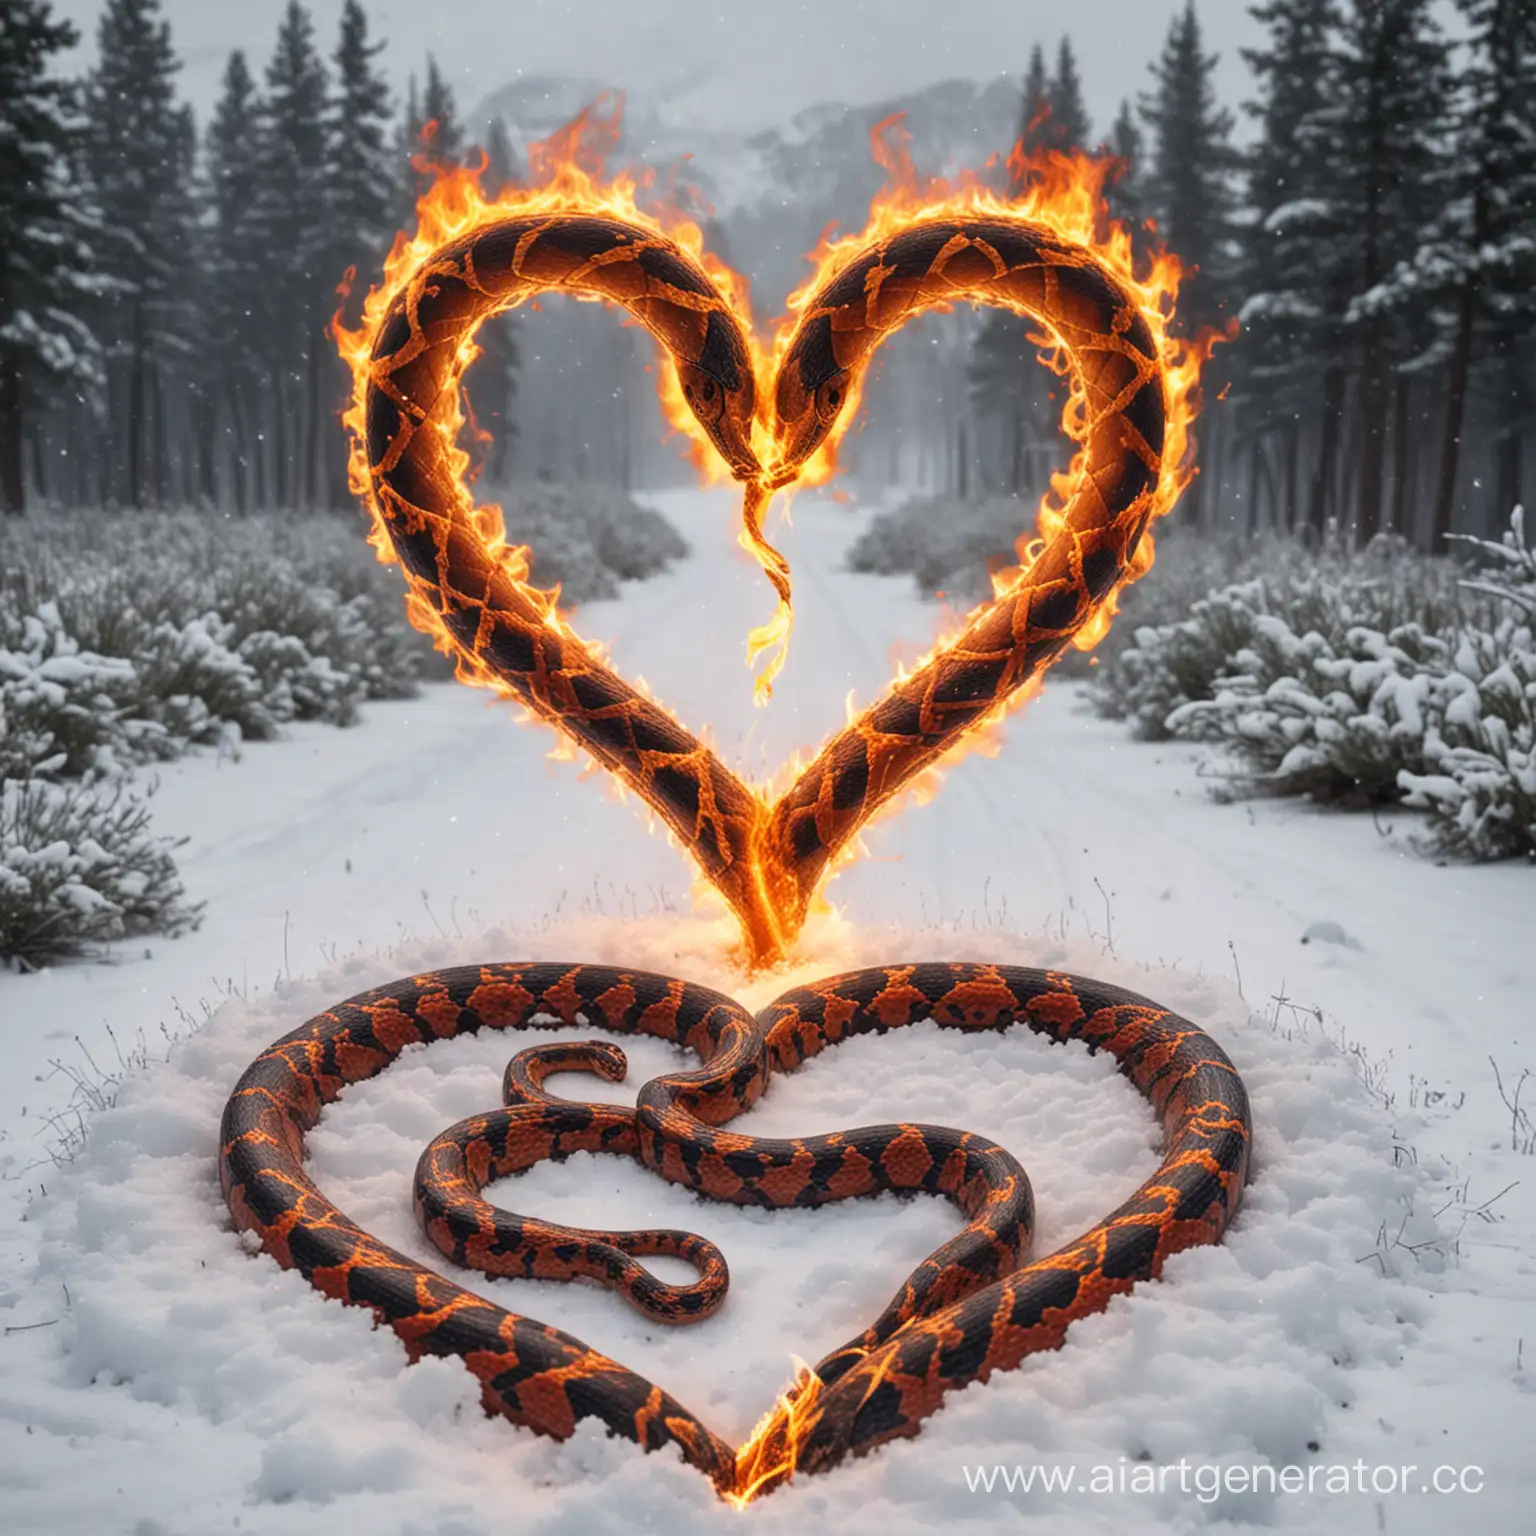 Змея в форме сердца горящая пламенем. На фоне идет снег и рядом с ней надпись стрим